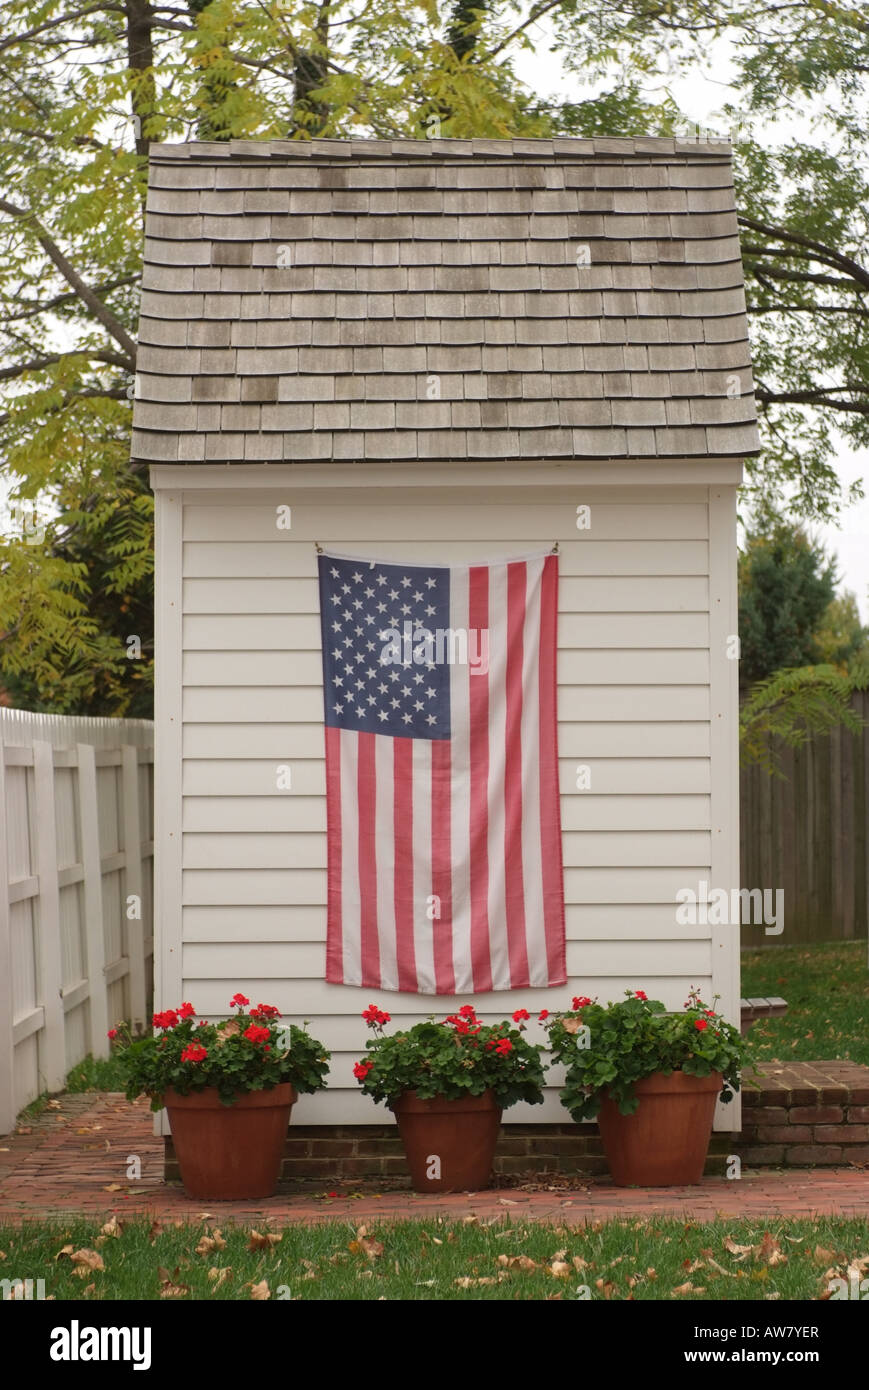 Chestertown USA USA drapeau sur une maison shed Banque D'Images